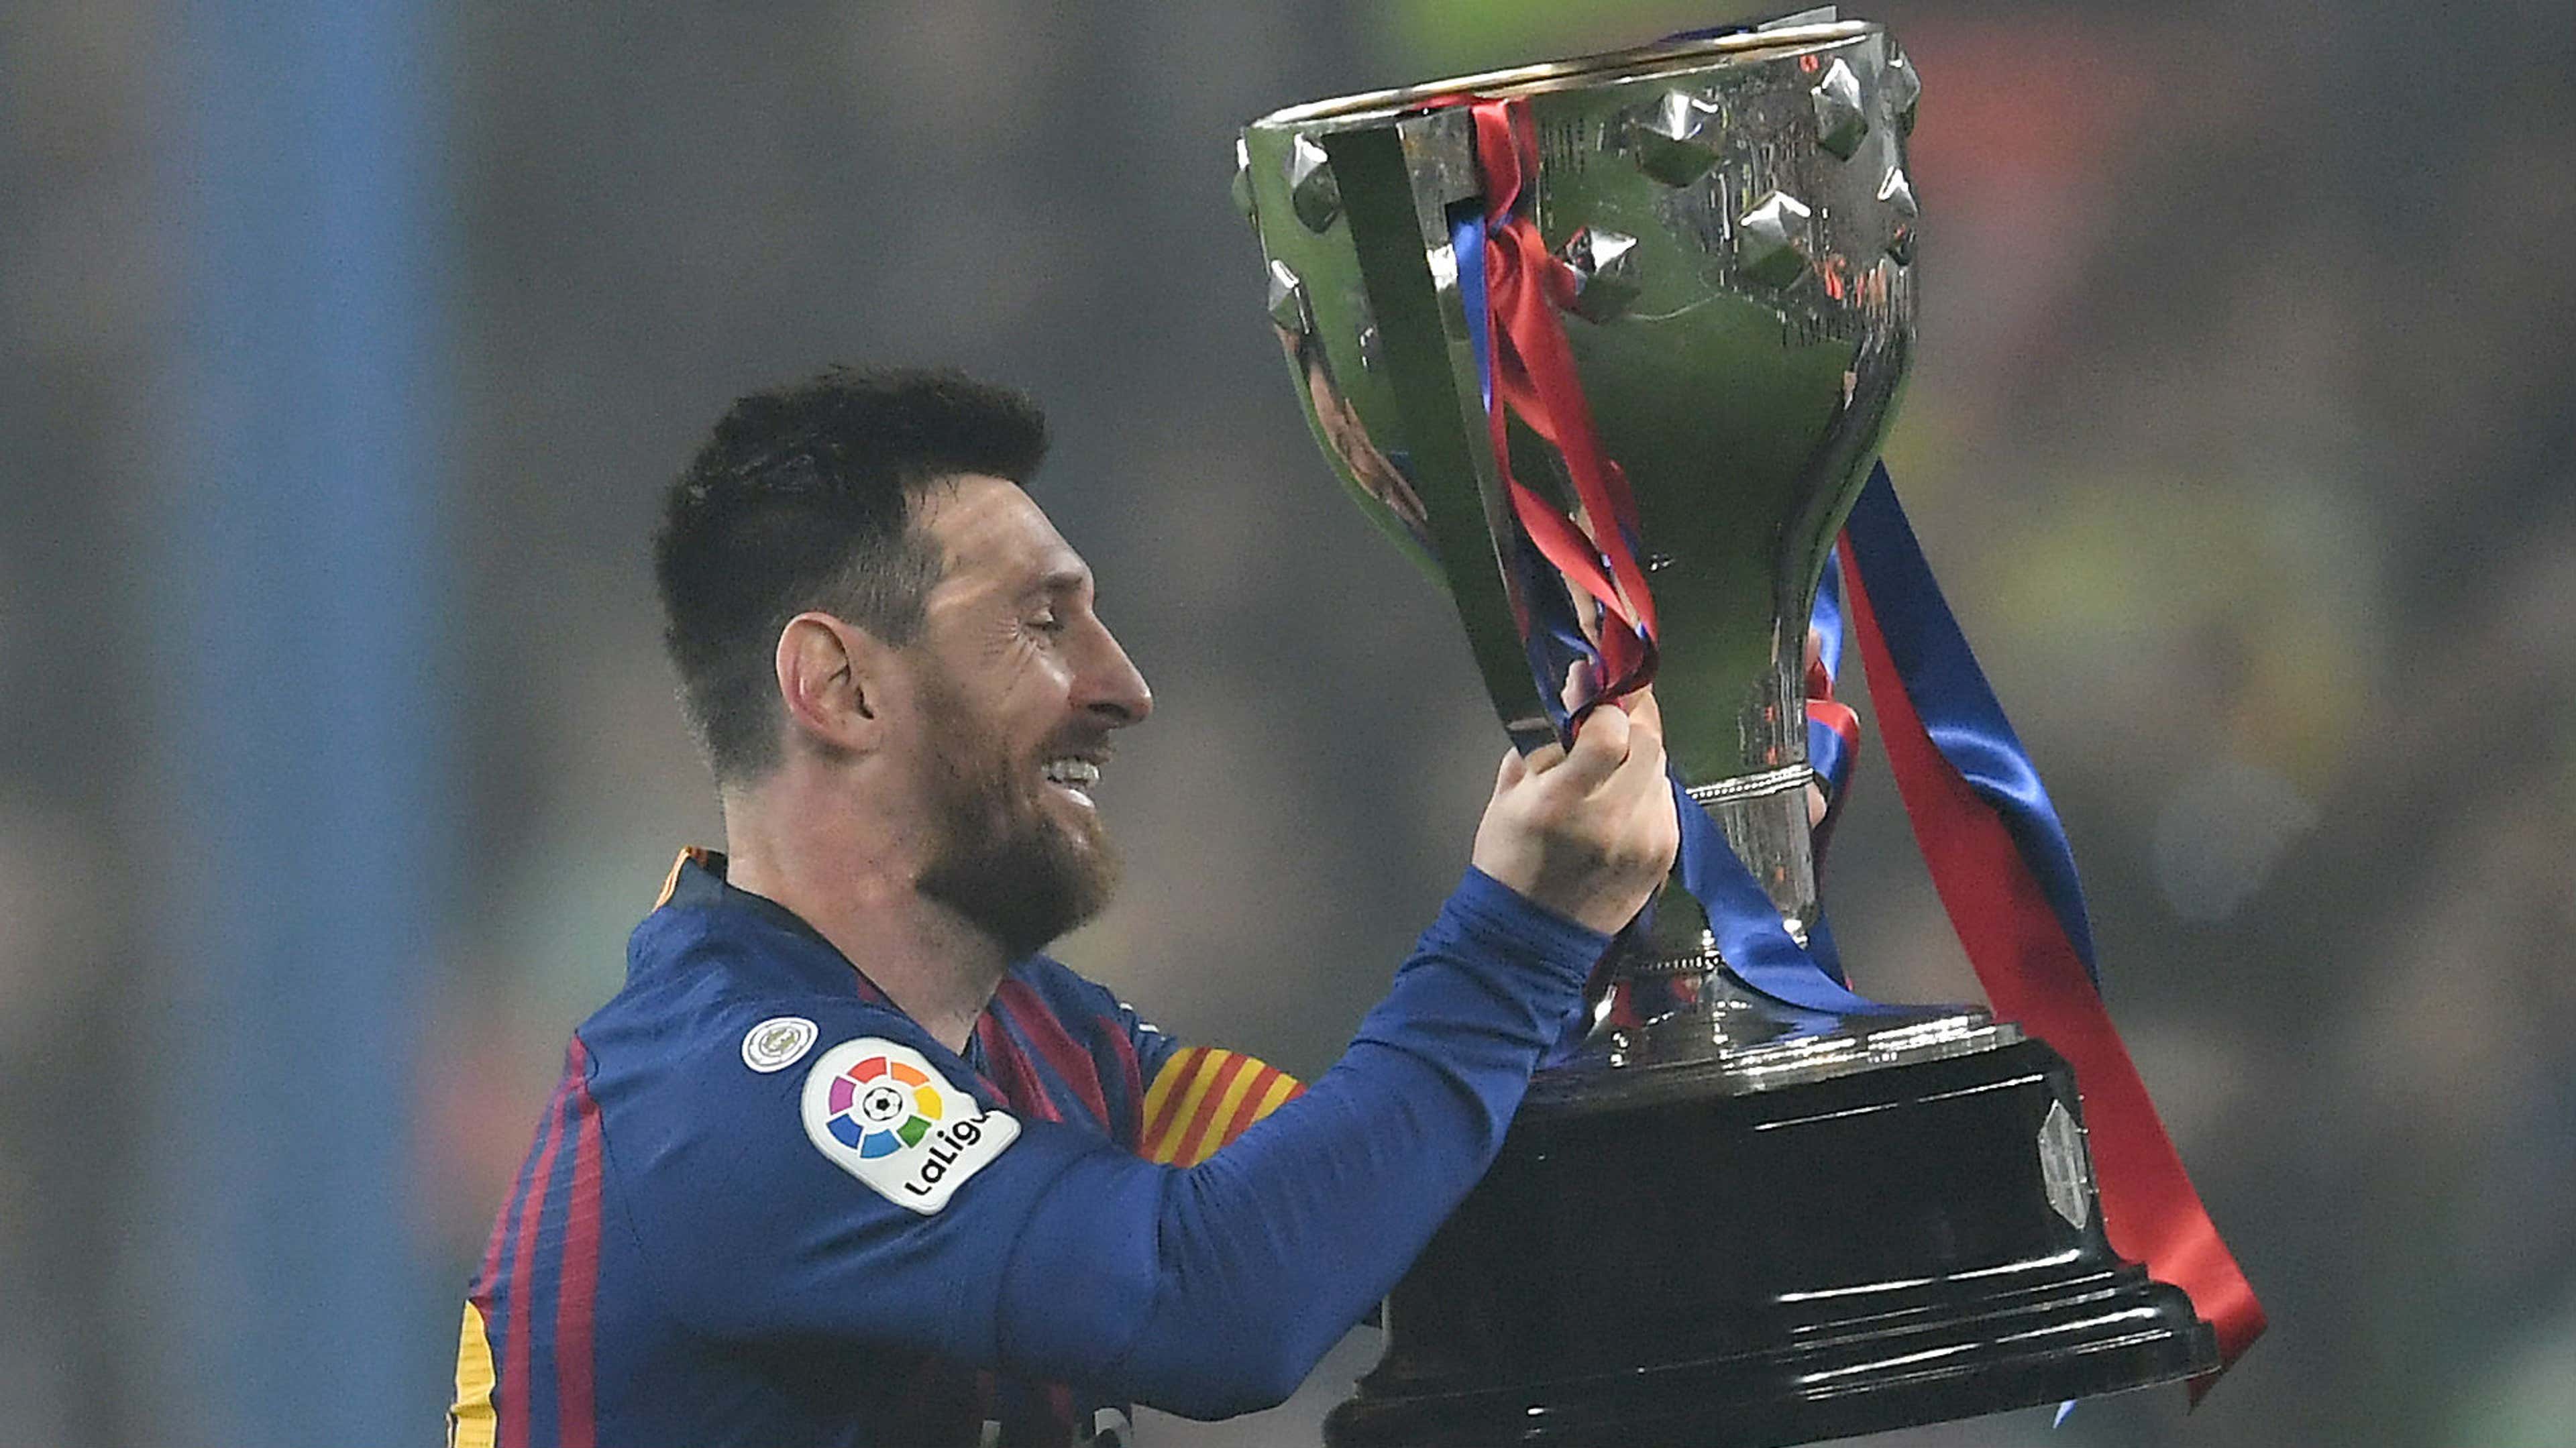 Semana Barça: ESPN reprisa jogos da Tríplice Coroa e quatro títulos do time  na Champions - ESPN